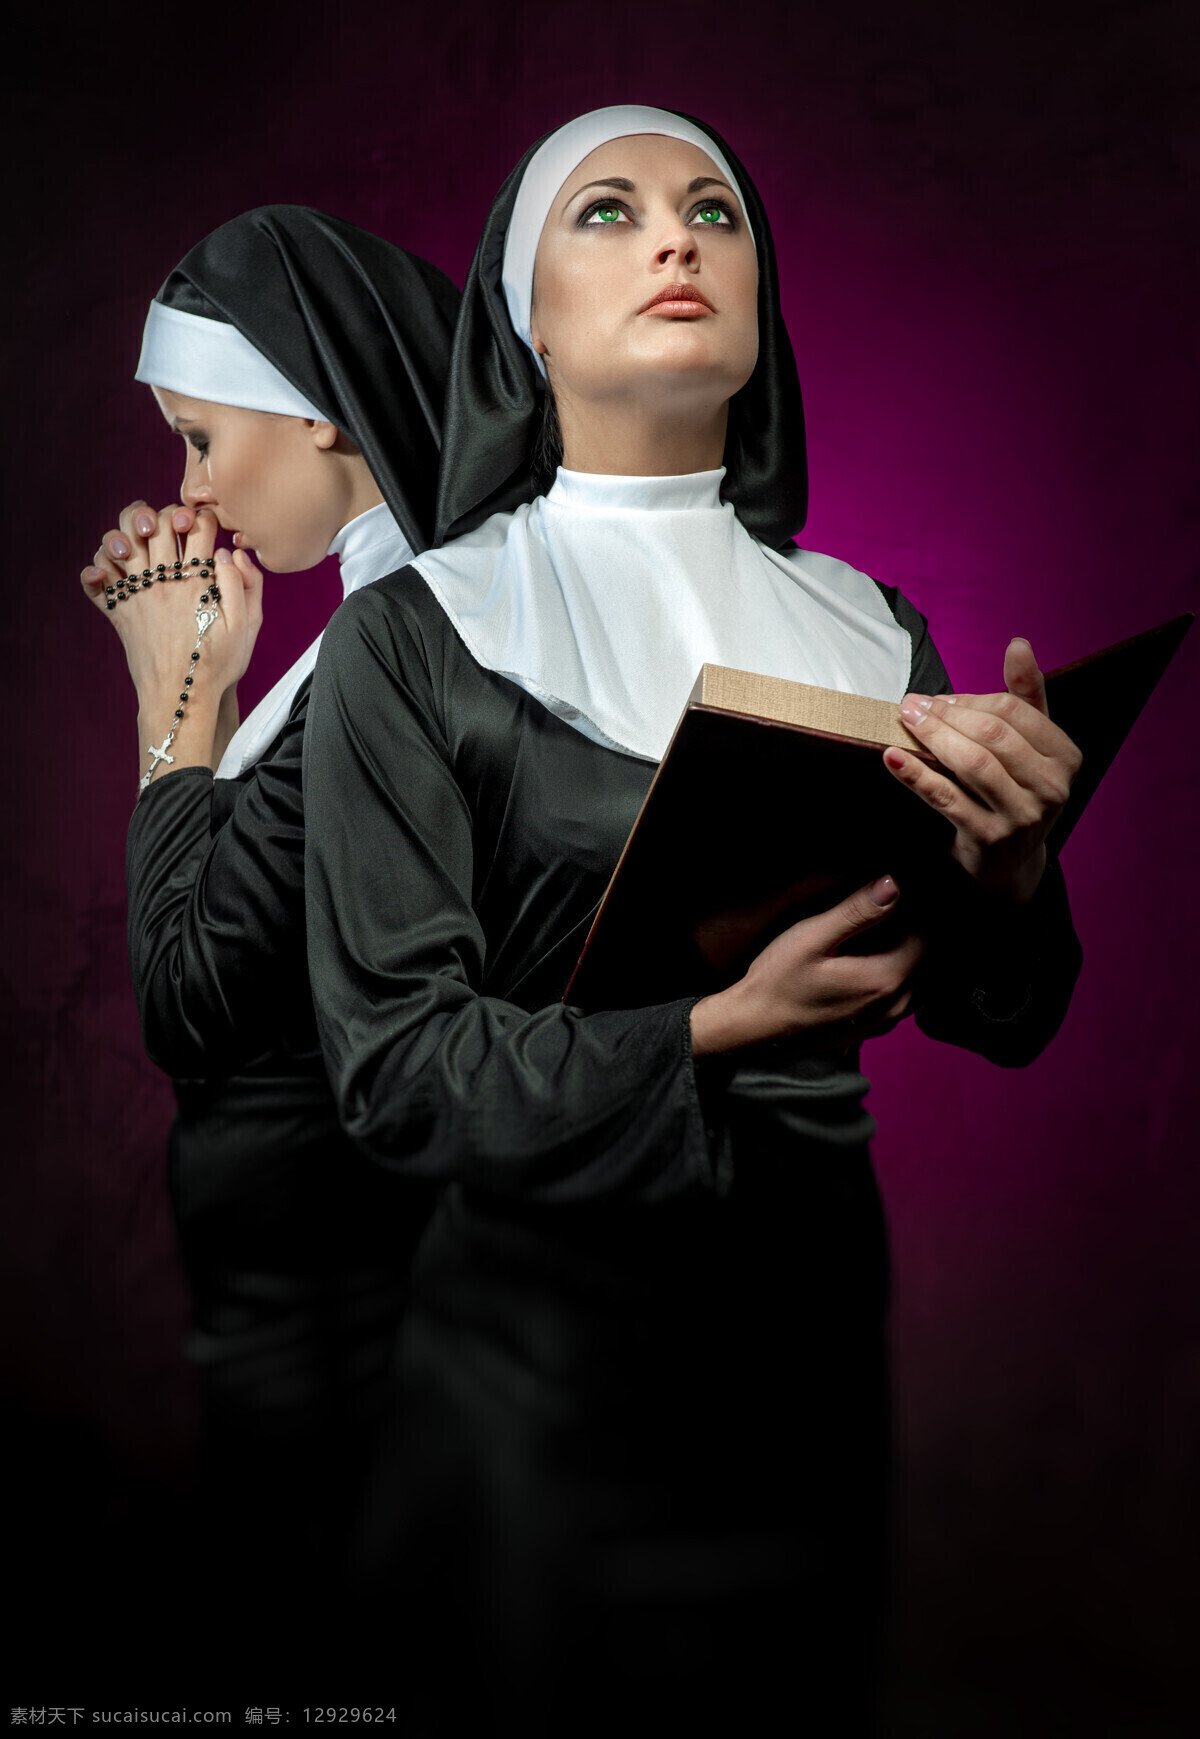 修女 美女 女人 西方美女 宗教人物 黑袍 长袍 人物图库 女性女人